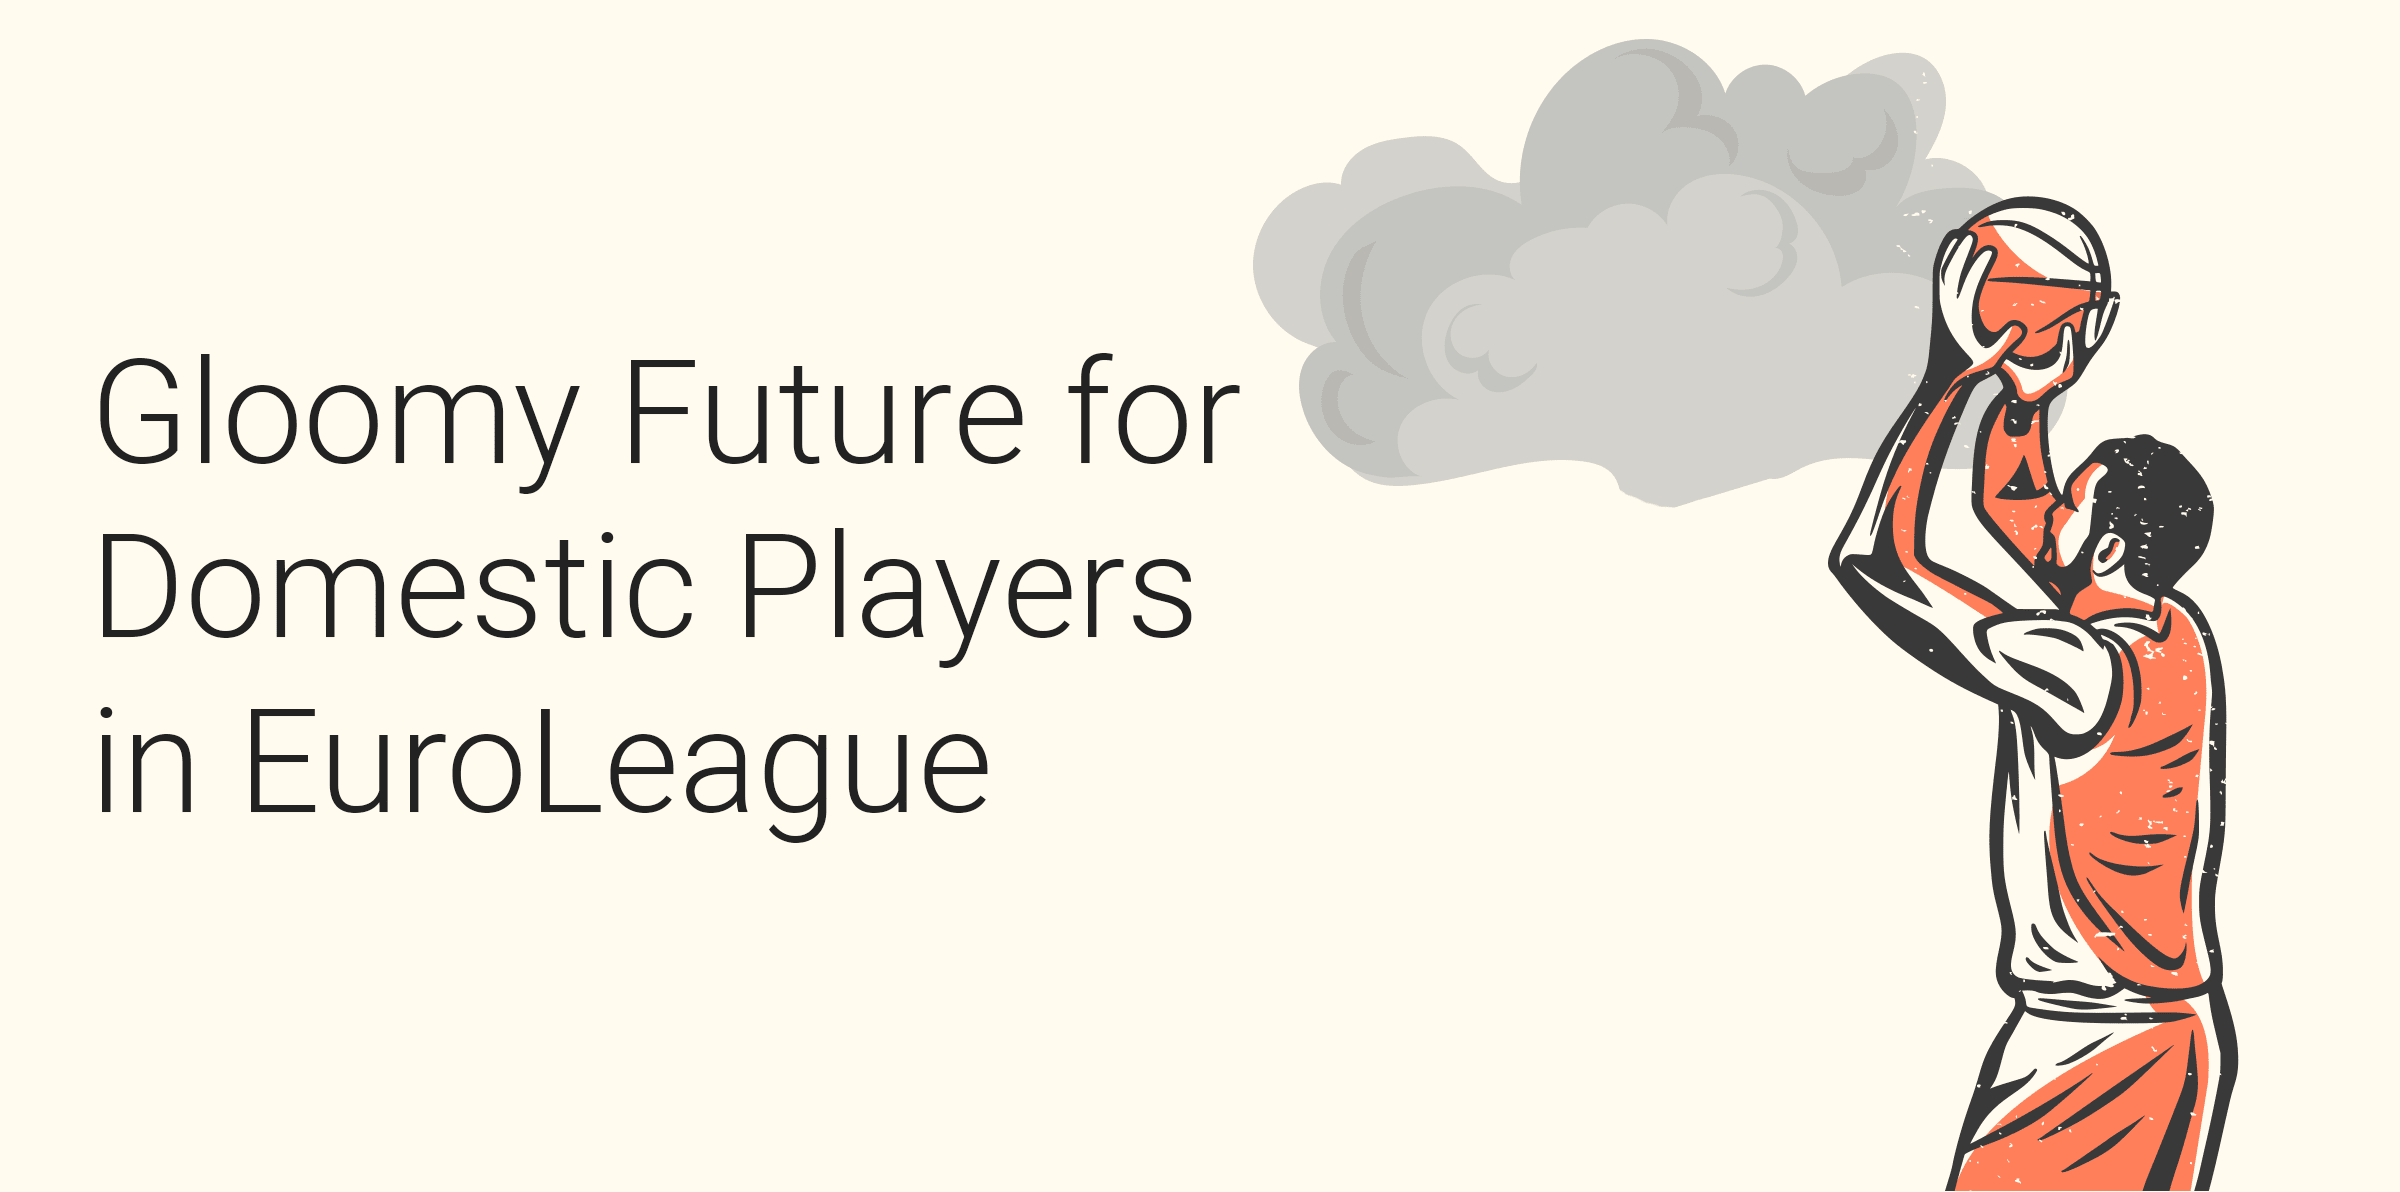 El futuro pinta mal para los jugadores nacionales en la Euroliga